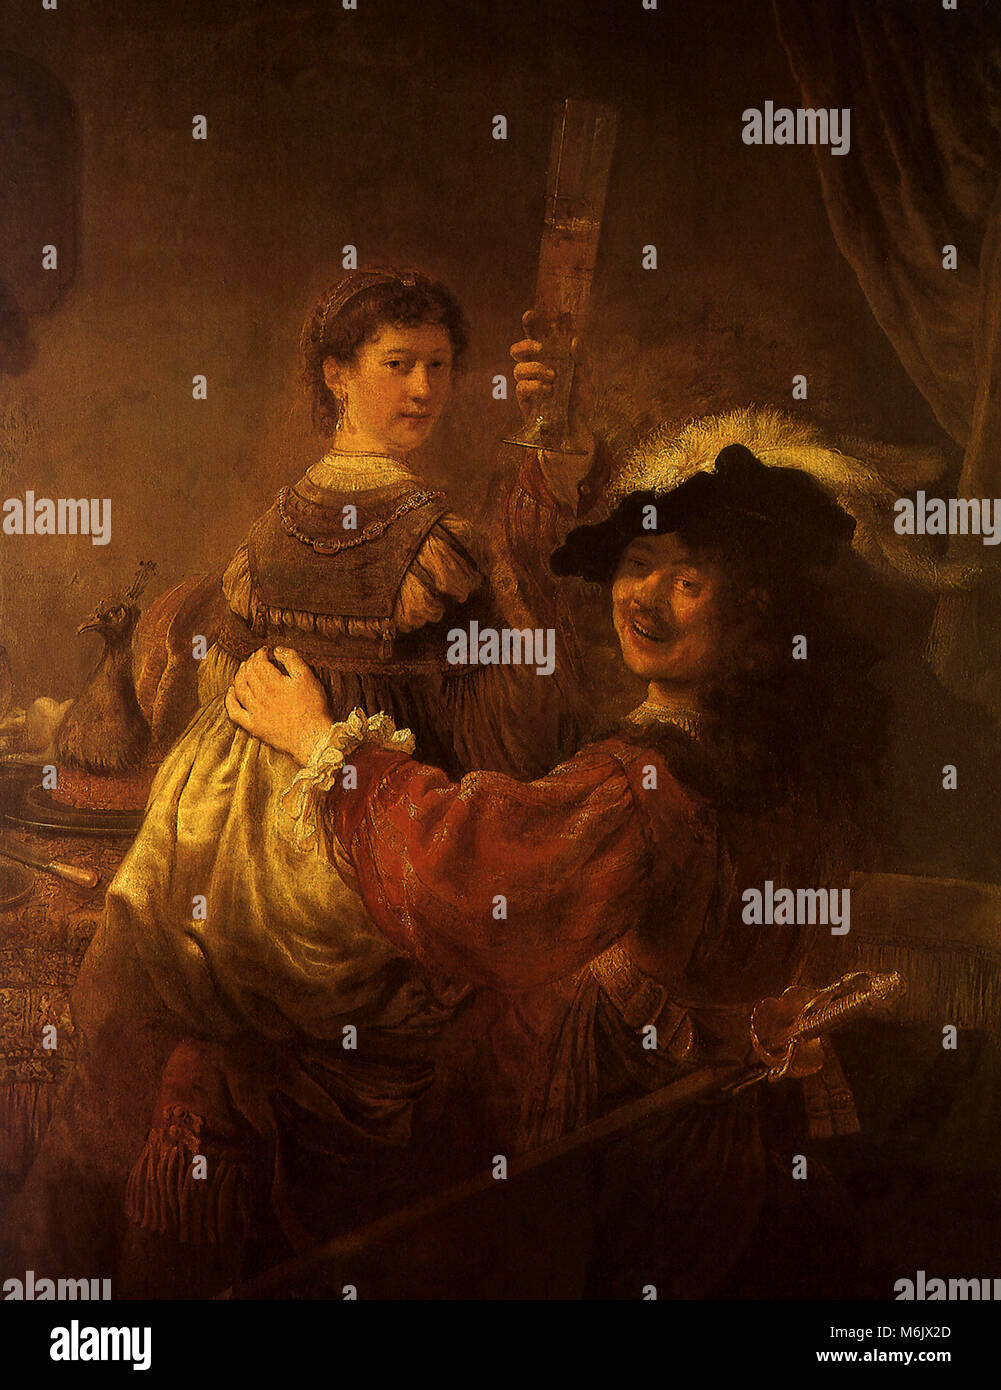 Rembrandt und Saskia in der Szene des verlorenen Sohnes, Rembrandt, Harmensz van Rijn, 1636. Stockfoto